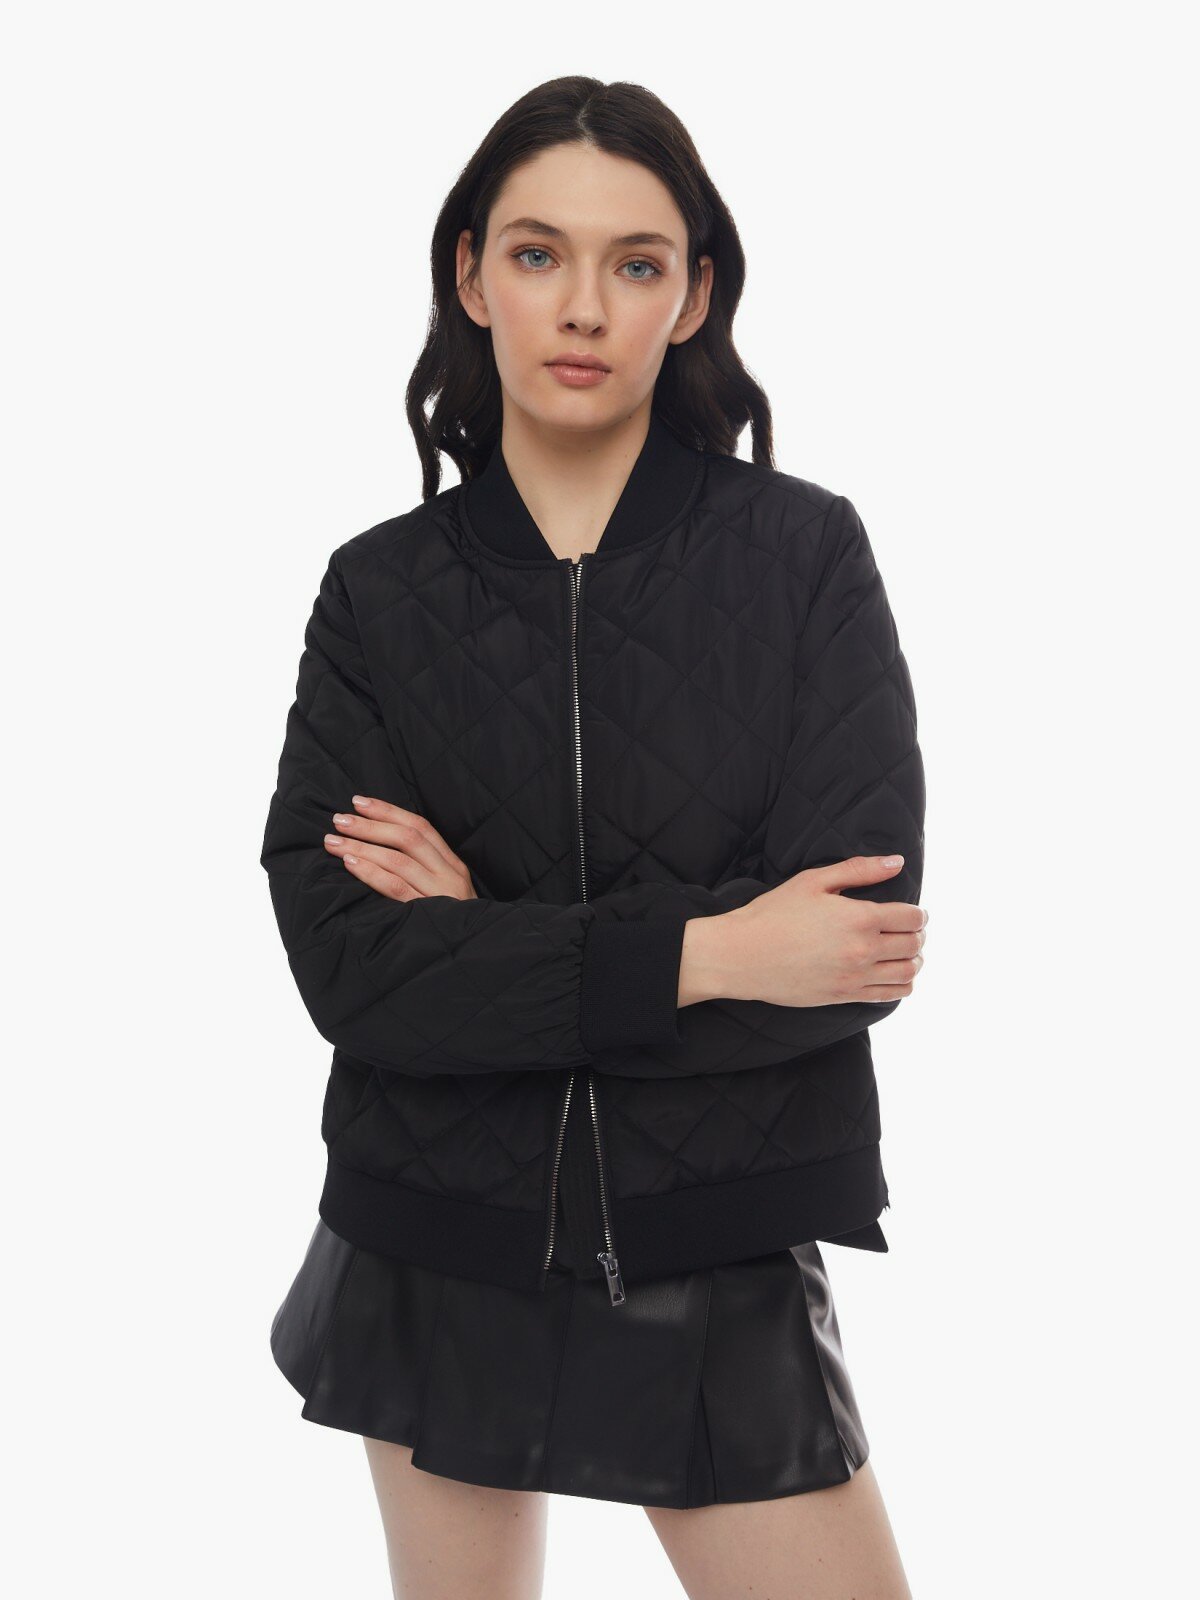 Тёплая куртка-бомбер на синтепоне со стёжкой цвет Черный размер S